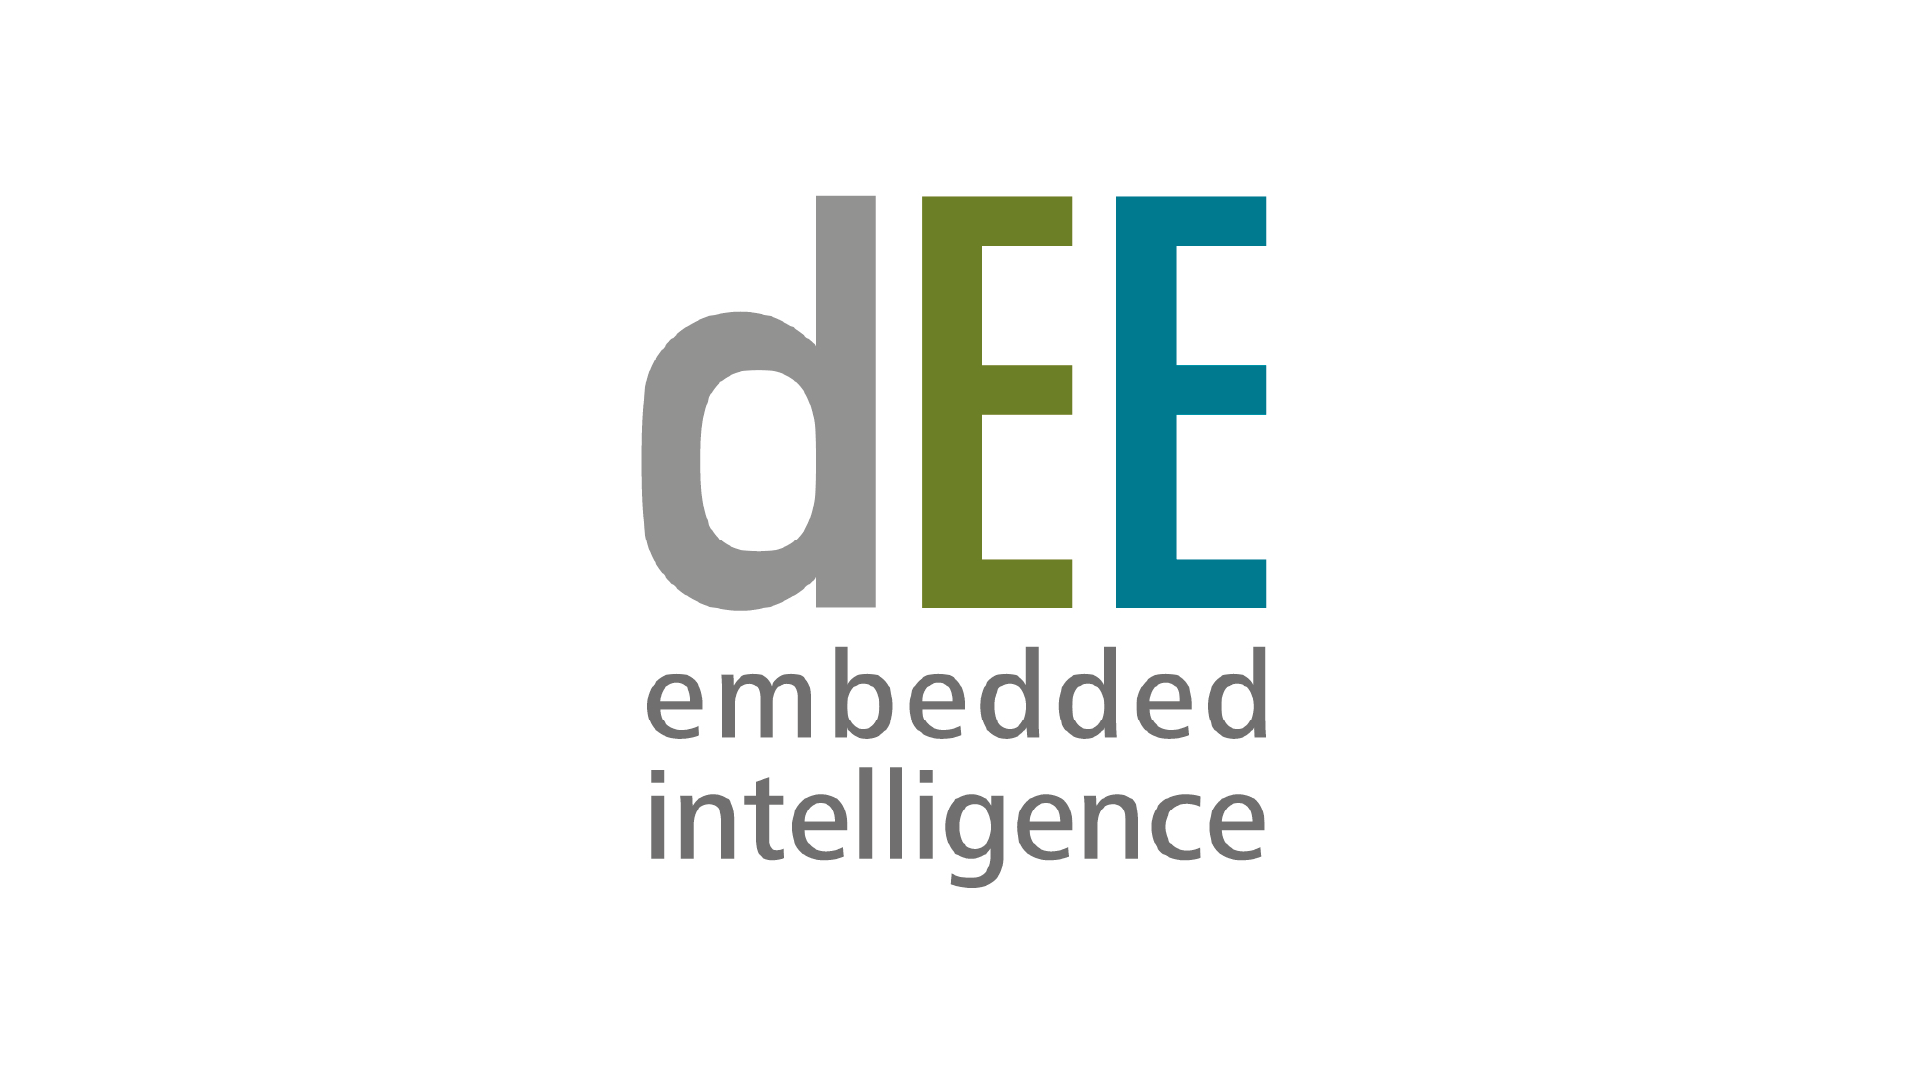 Logo of dieEntwickler Elektronik (dEE) in grey and green. Underneath is written "embedded intelligence".